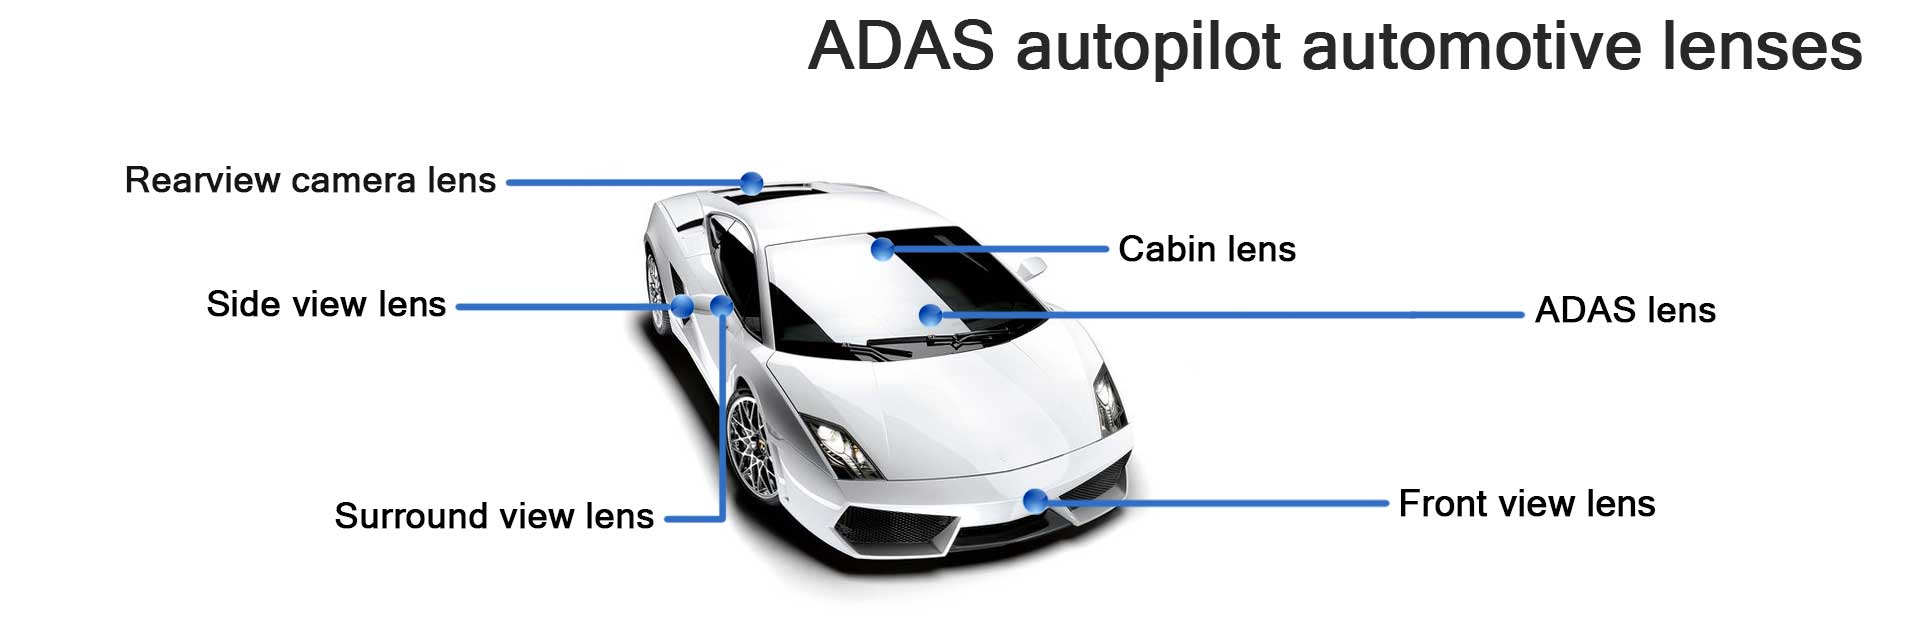 Car ADAS Camera Lens, Car CCTV System, Car Autopilot Lenses